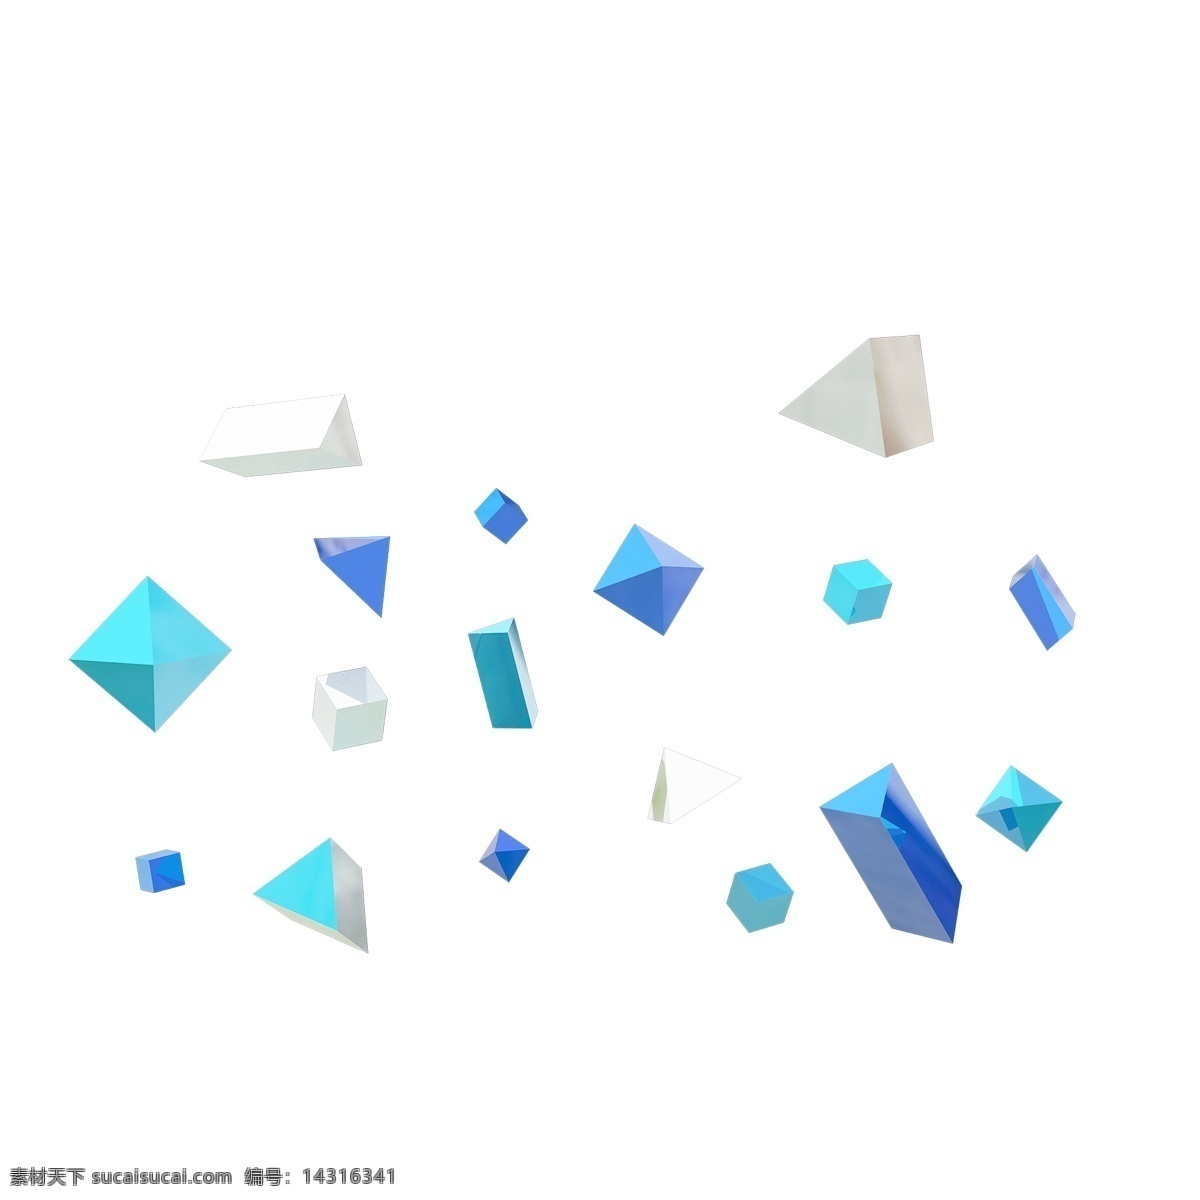 c4d 蓝白色 方形 锥形 漂浮 颗粒 蓝色 白色 漂浮颗粒 蓝色三角锥 蓝色方形 天蓝色 多面体 悬浮 装饰物 卡通